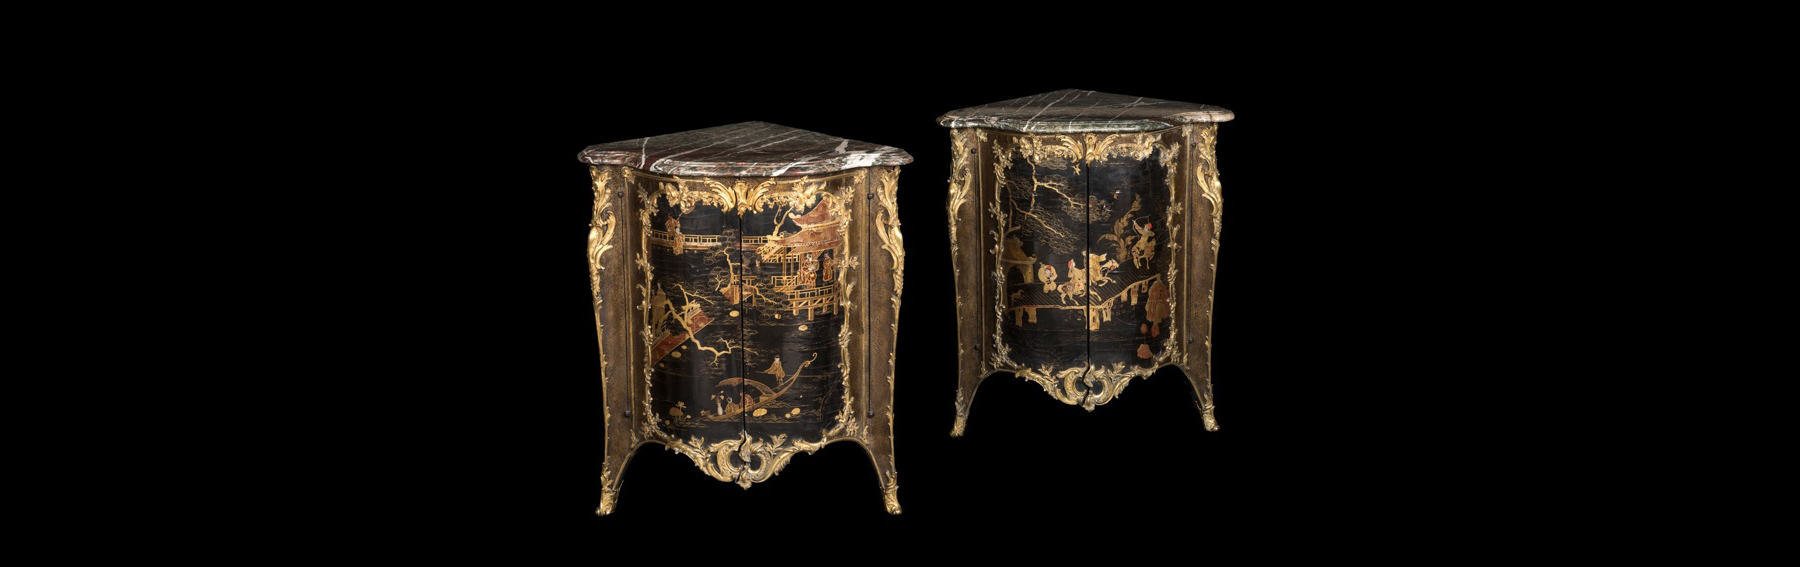 65.000 euros por una pareja de rinconeras del S. XVIII en Goya